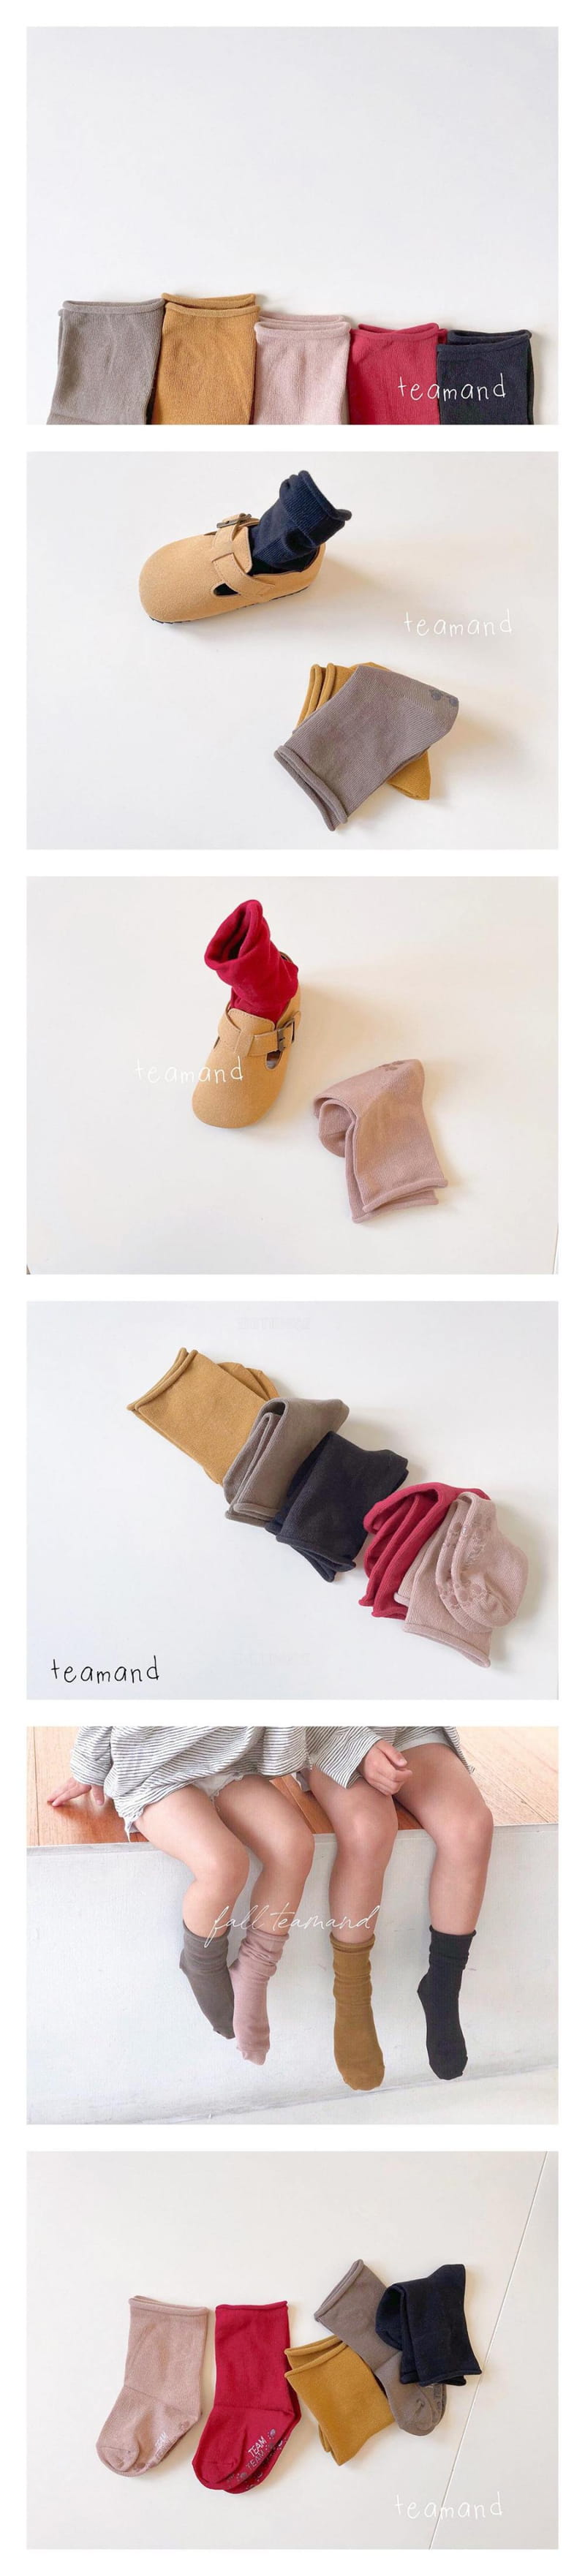 Teamand - Korean Children Fashion - #kidsshorts - Muzi Doldol Socks